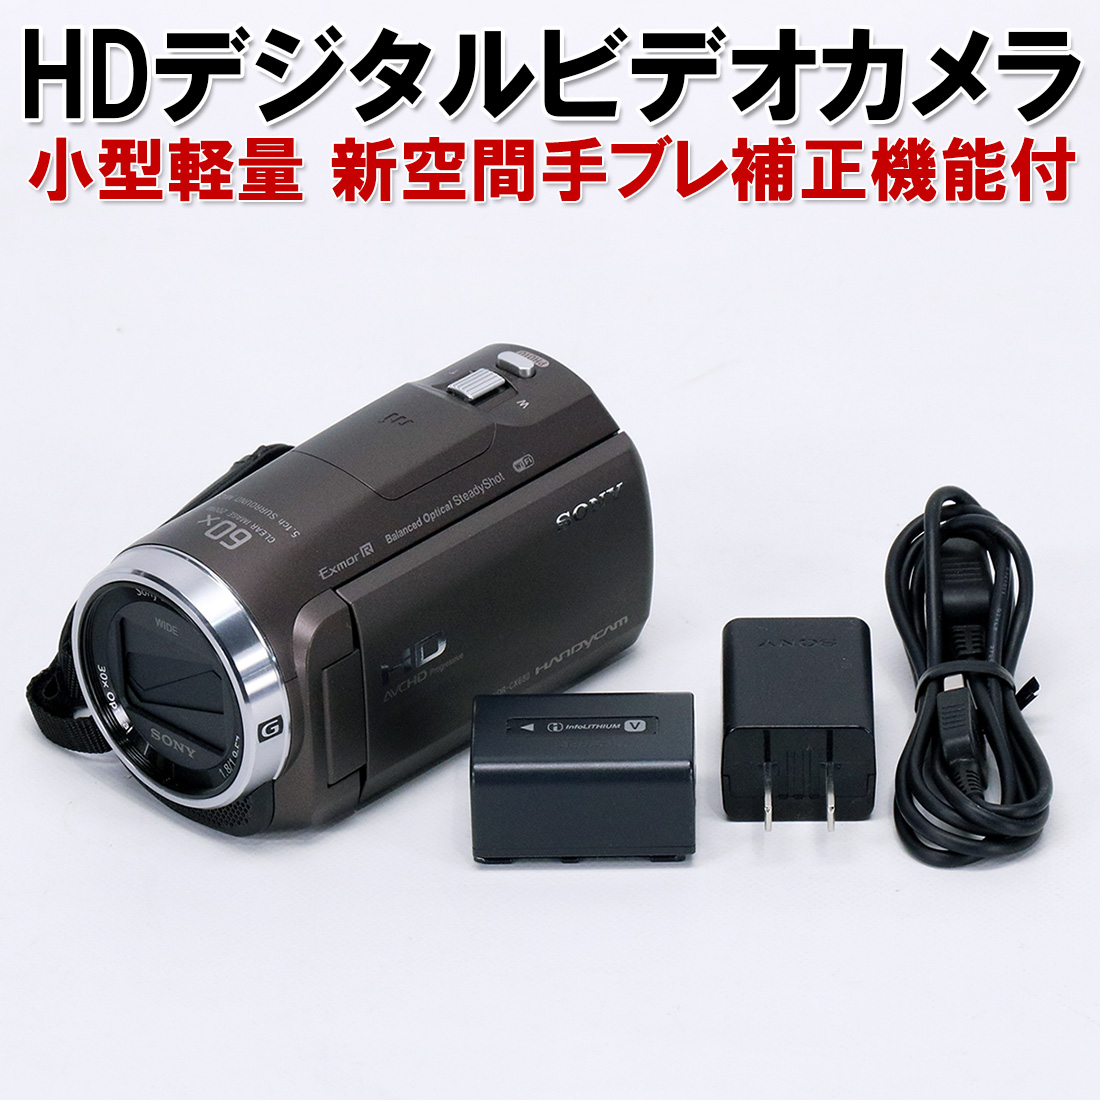 楽天市場現行モデル送料無料デジタルHDビデオカメラ